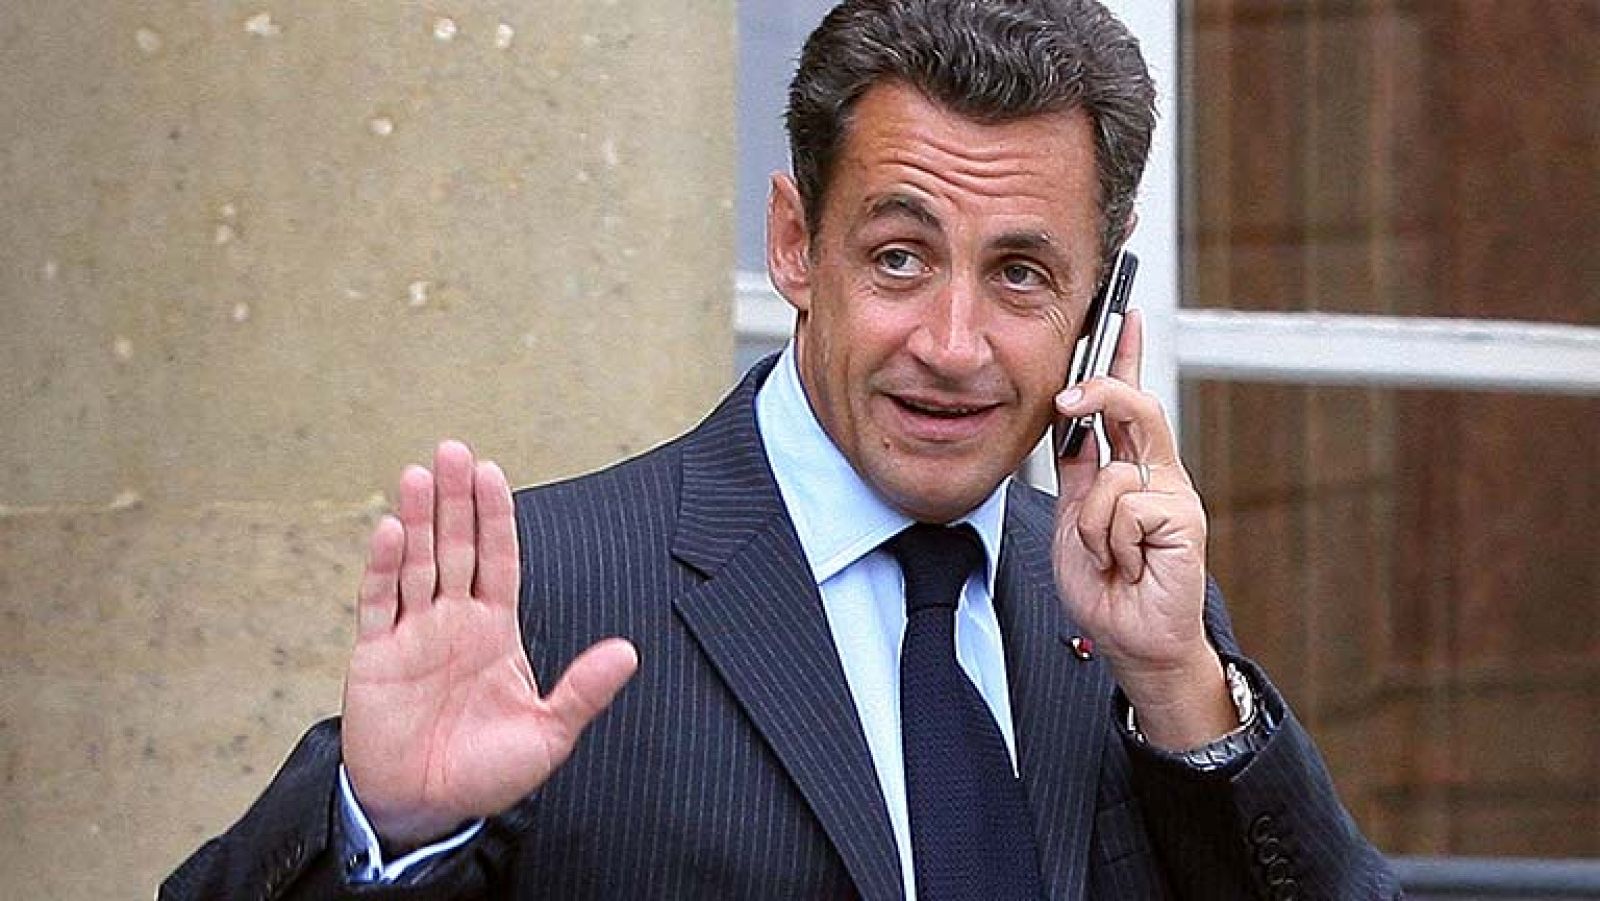 Los pinchazos judiciales a Sarkozy por presunta corrupción ensombrecen su futuro político